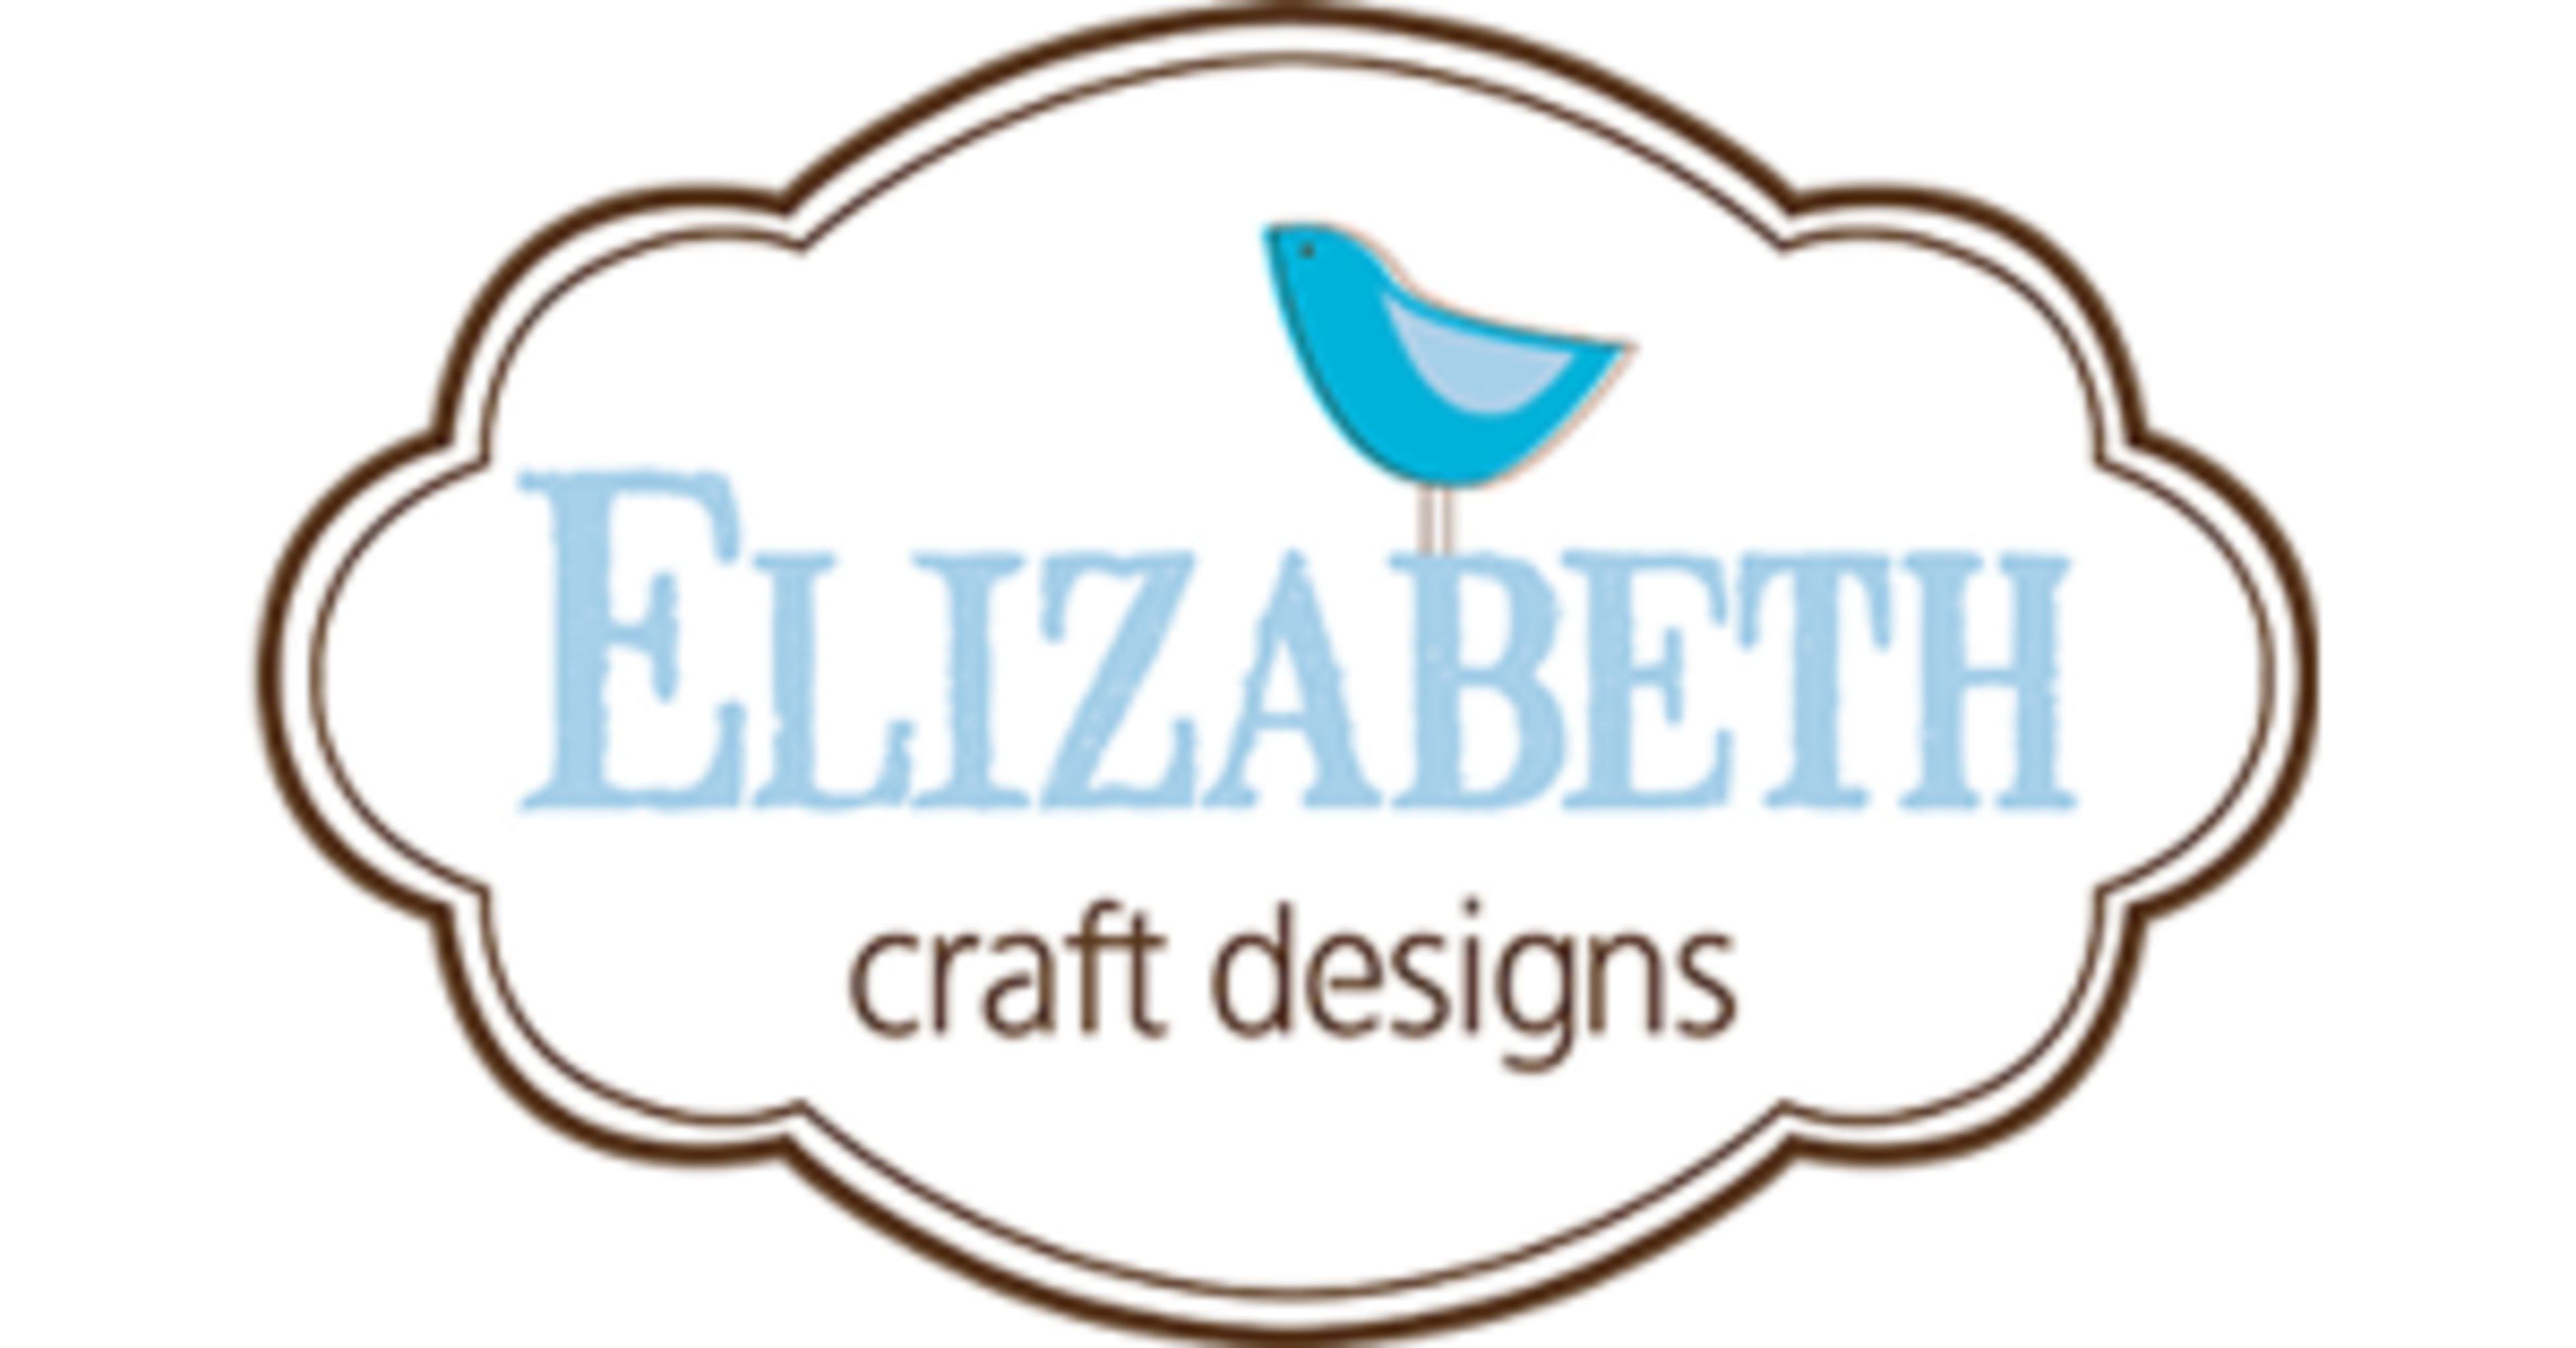 Elizabeth Craft DesignsCode